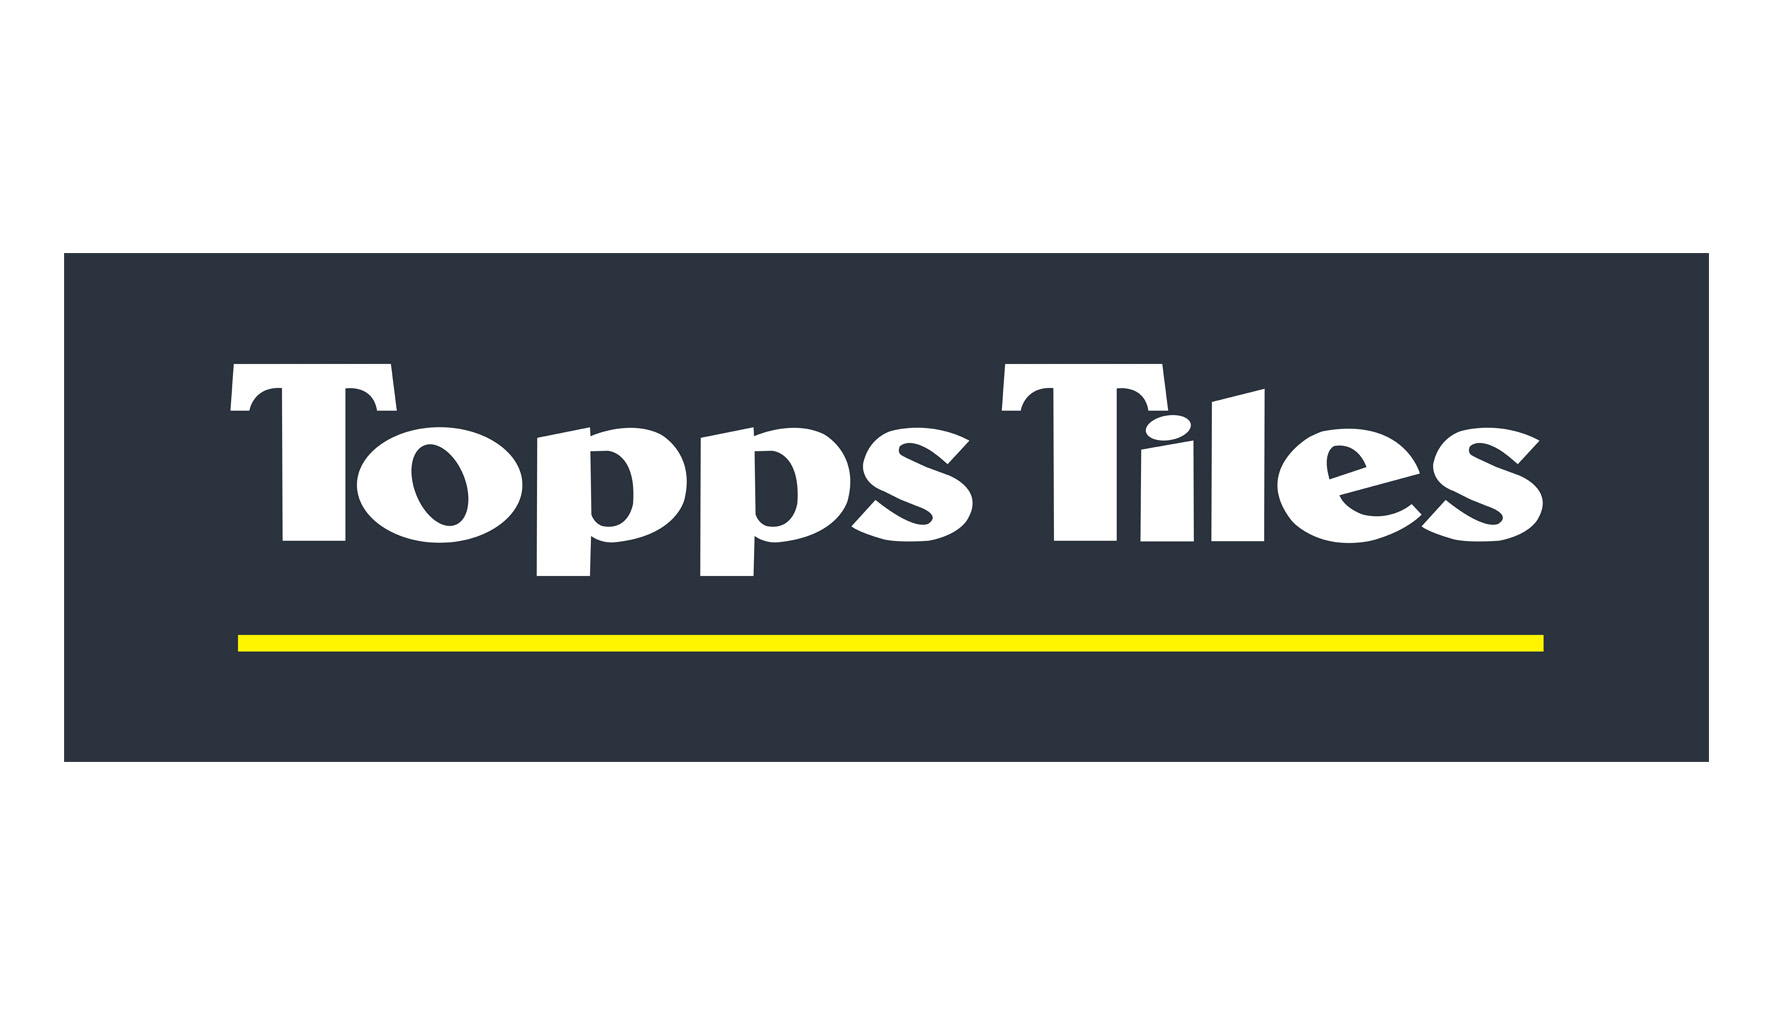 Topps Tiles